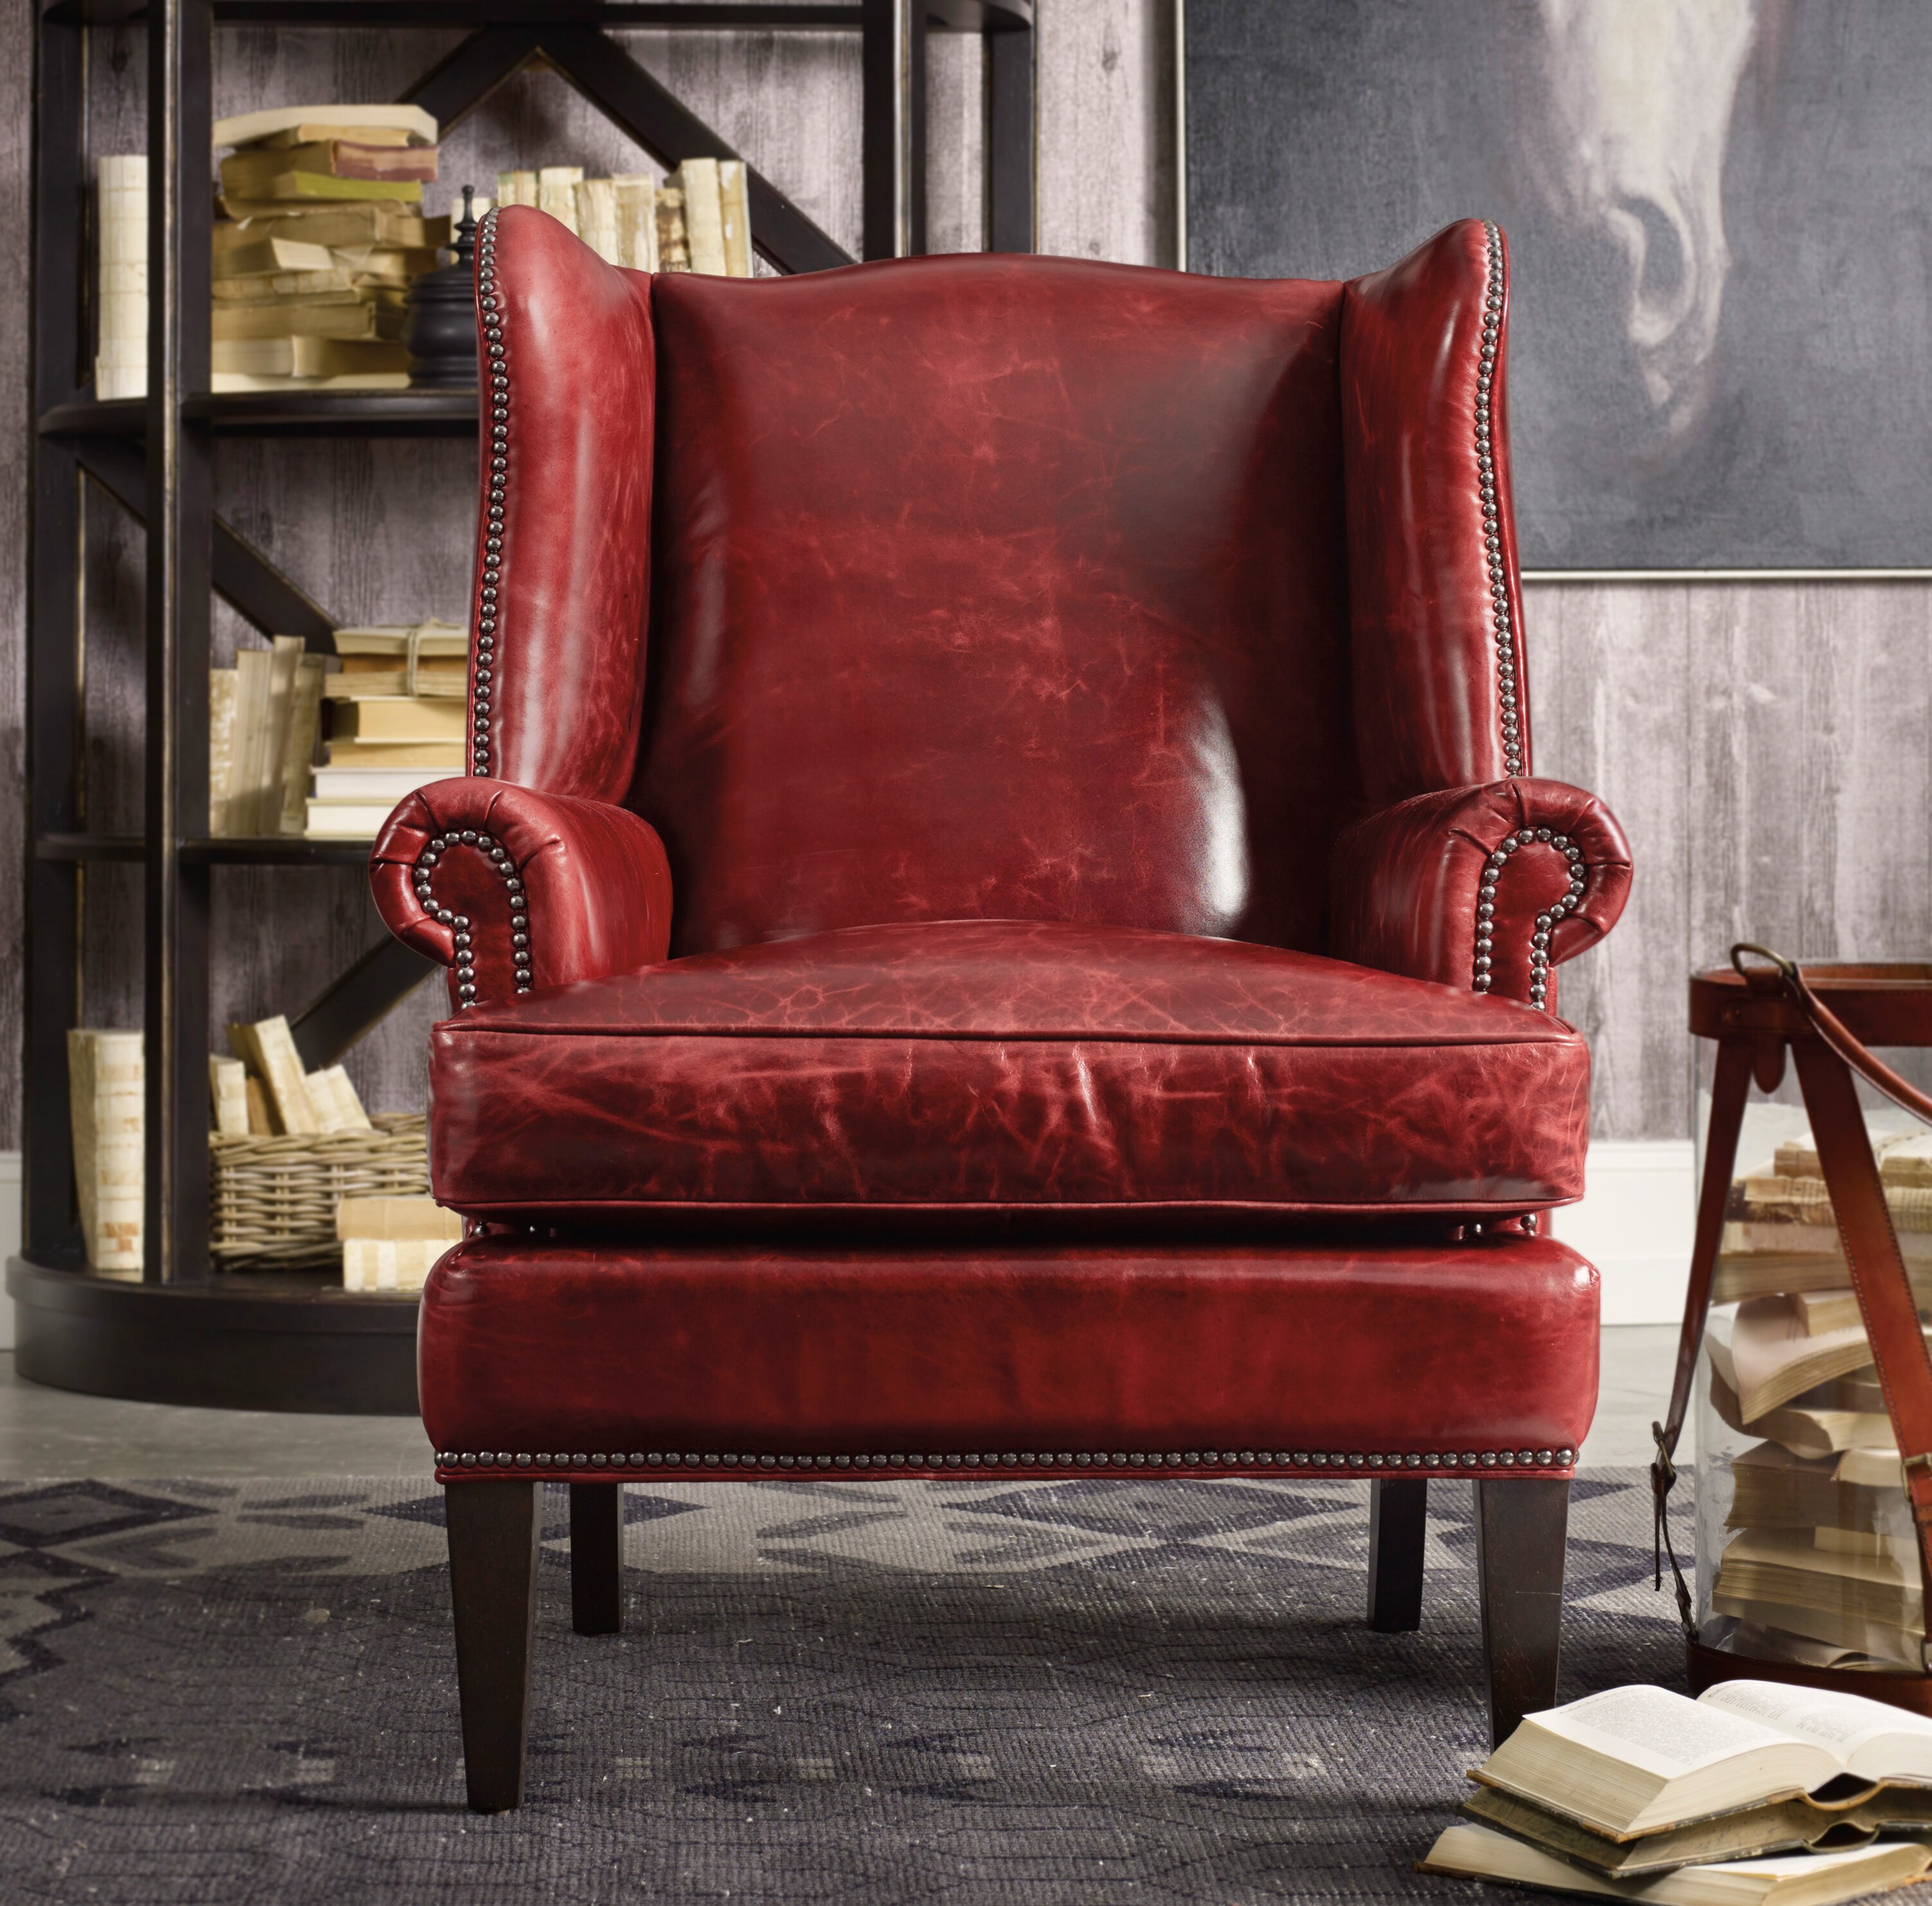 Кресло на английском. Кресло кожаное. Красное кресло в интерьере. Кожаное кресло в интерьере. Стулья в интерьере.